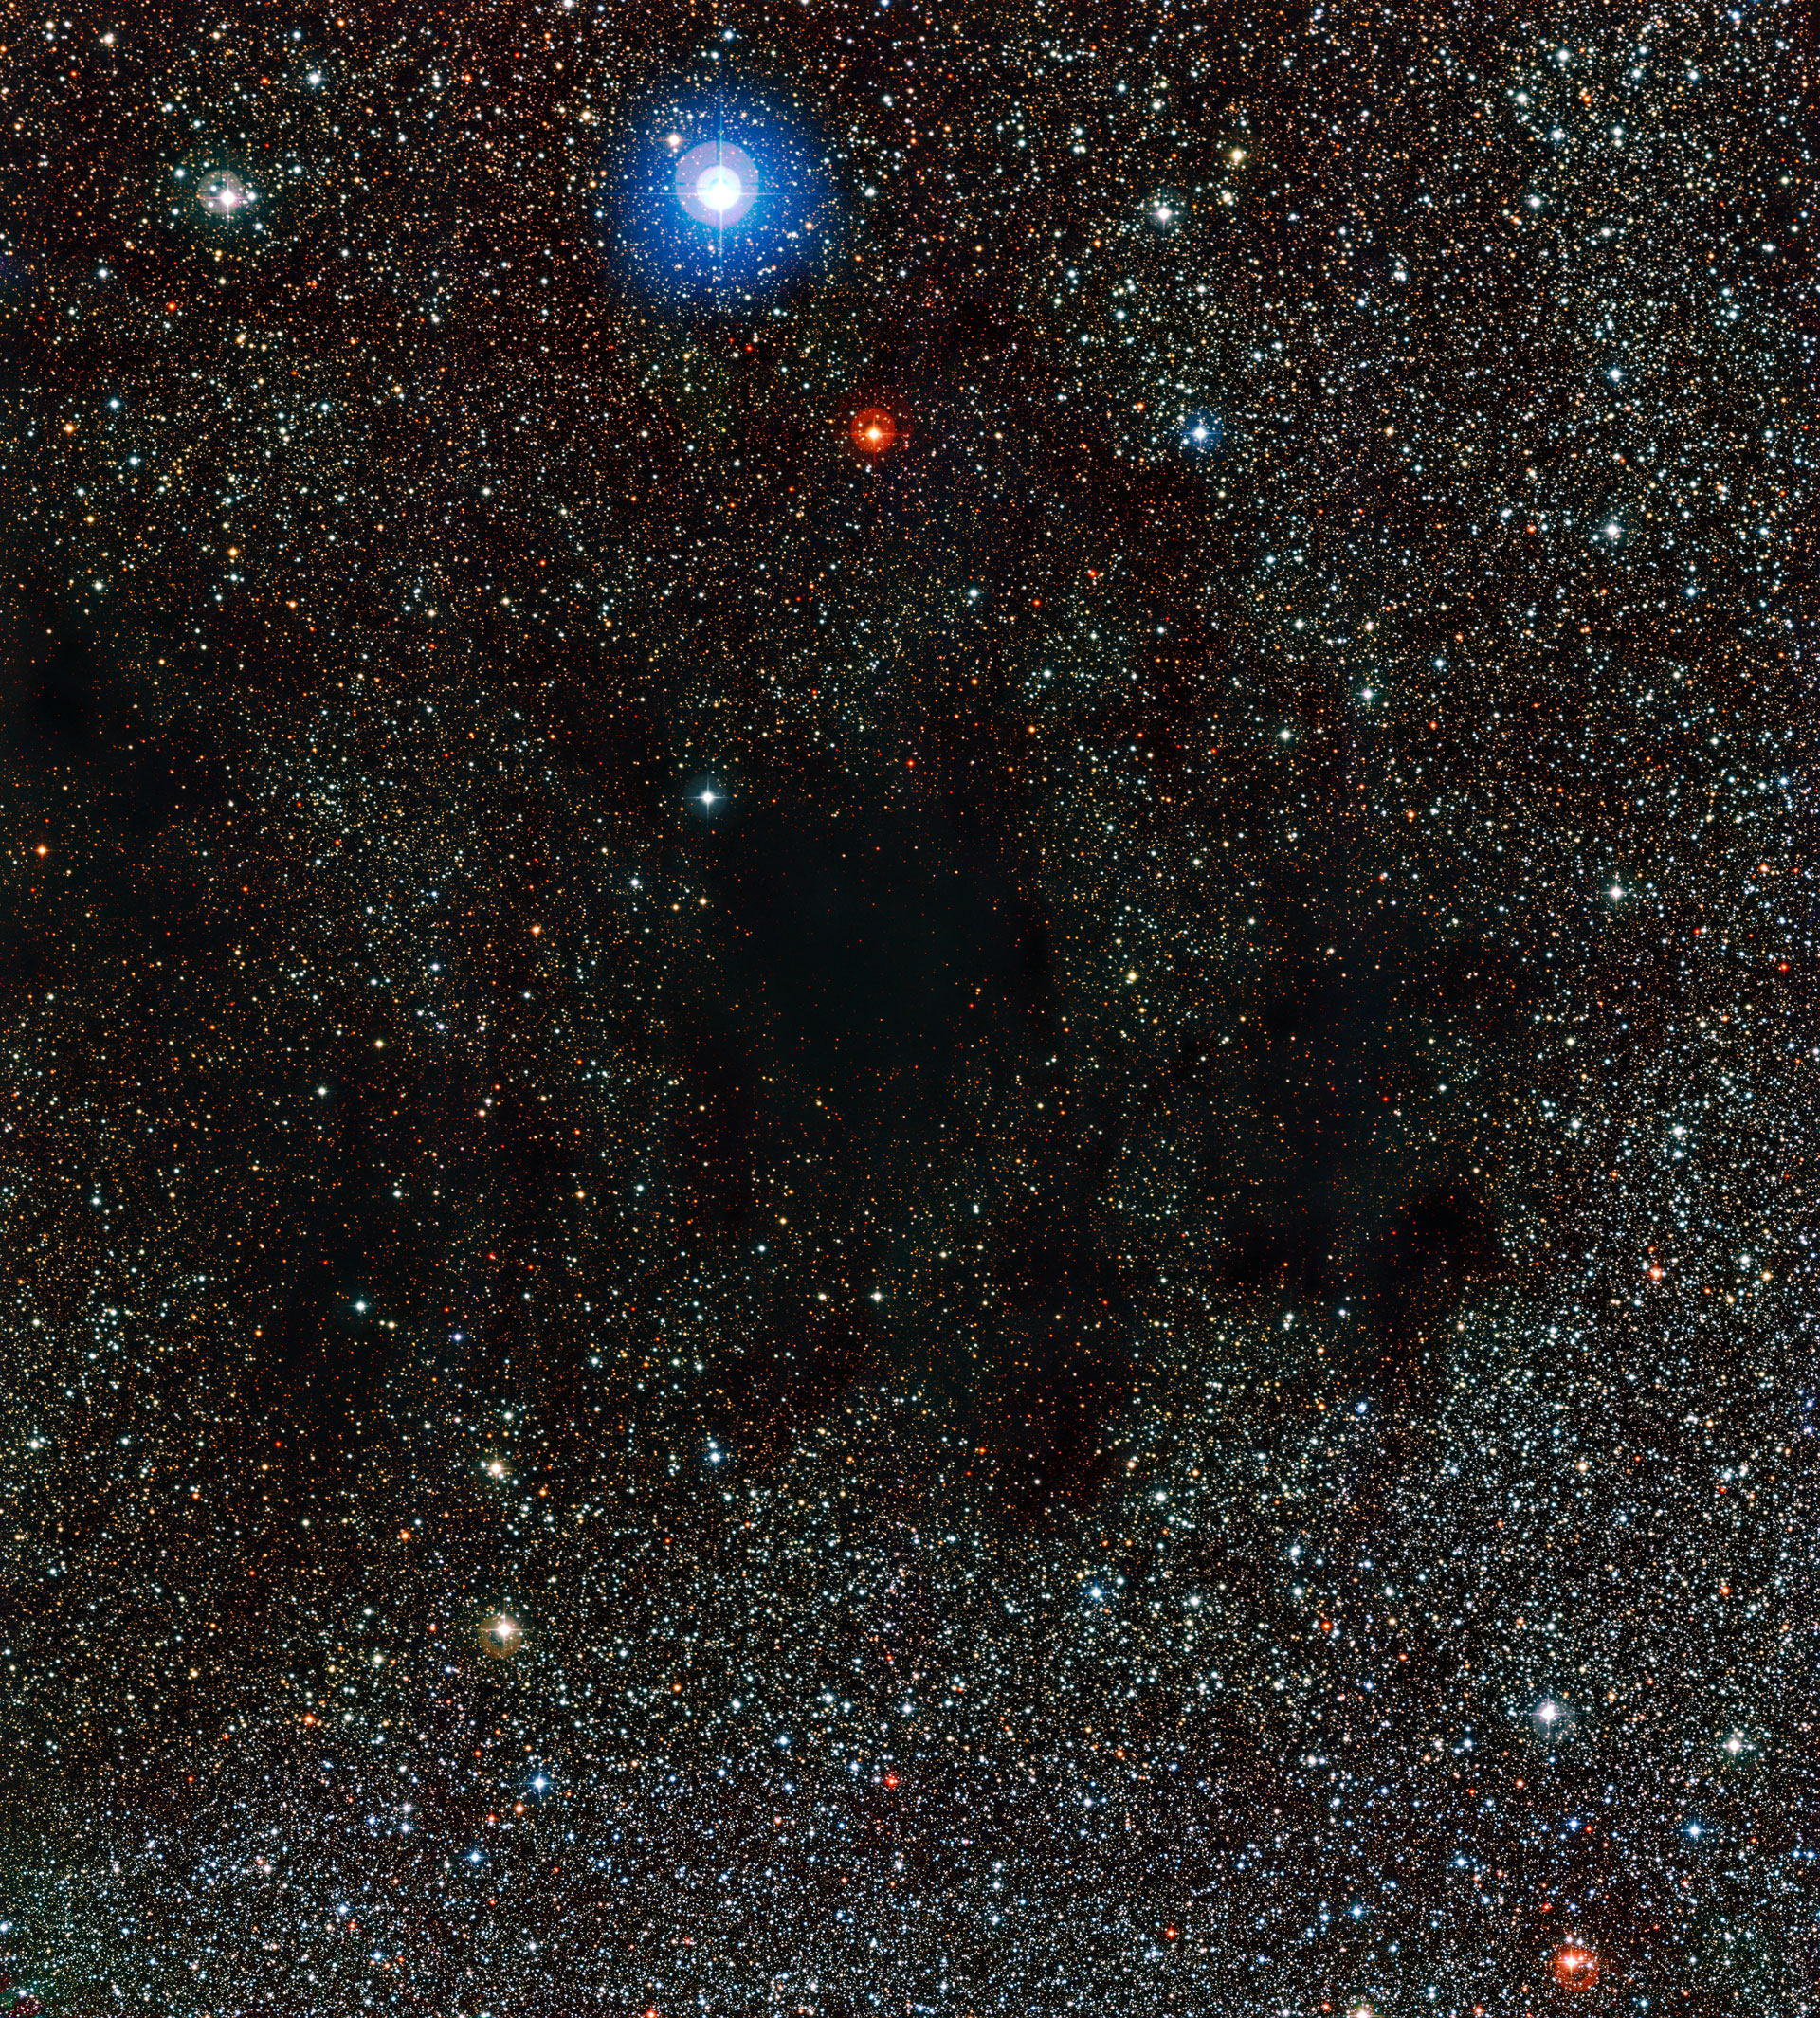 The Coalsack Dark Nebula